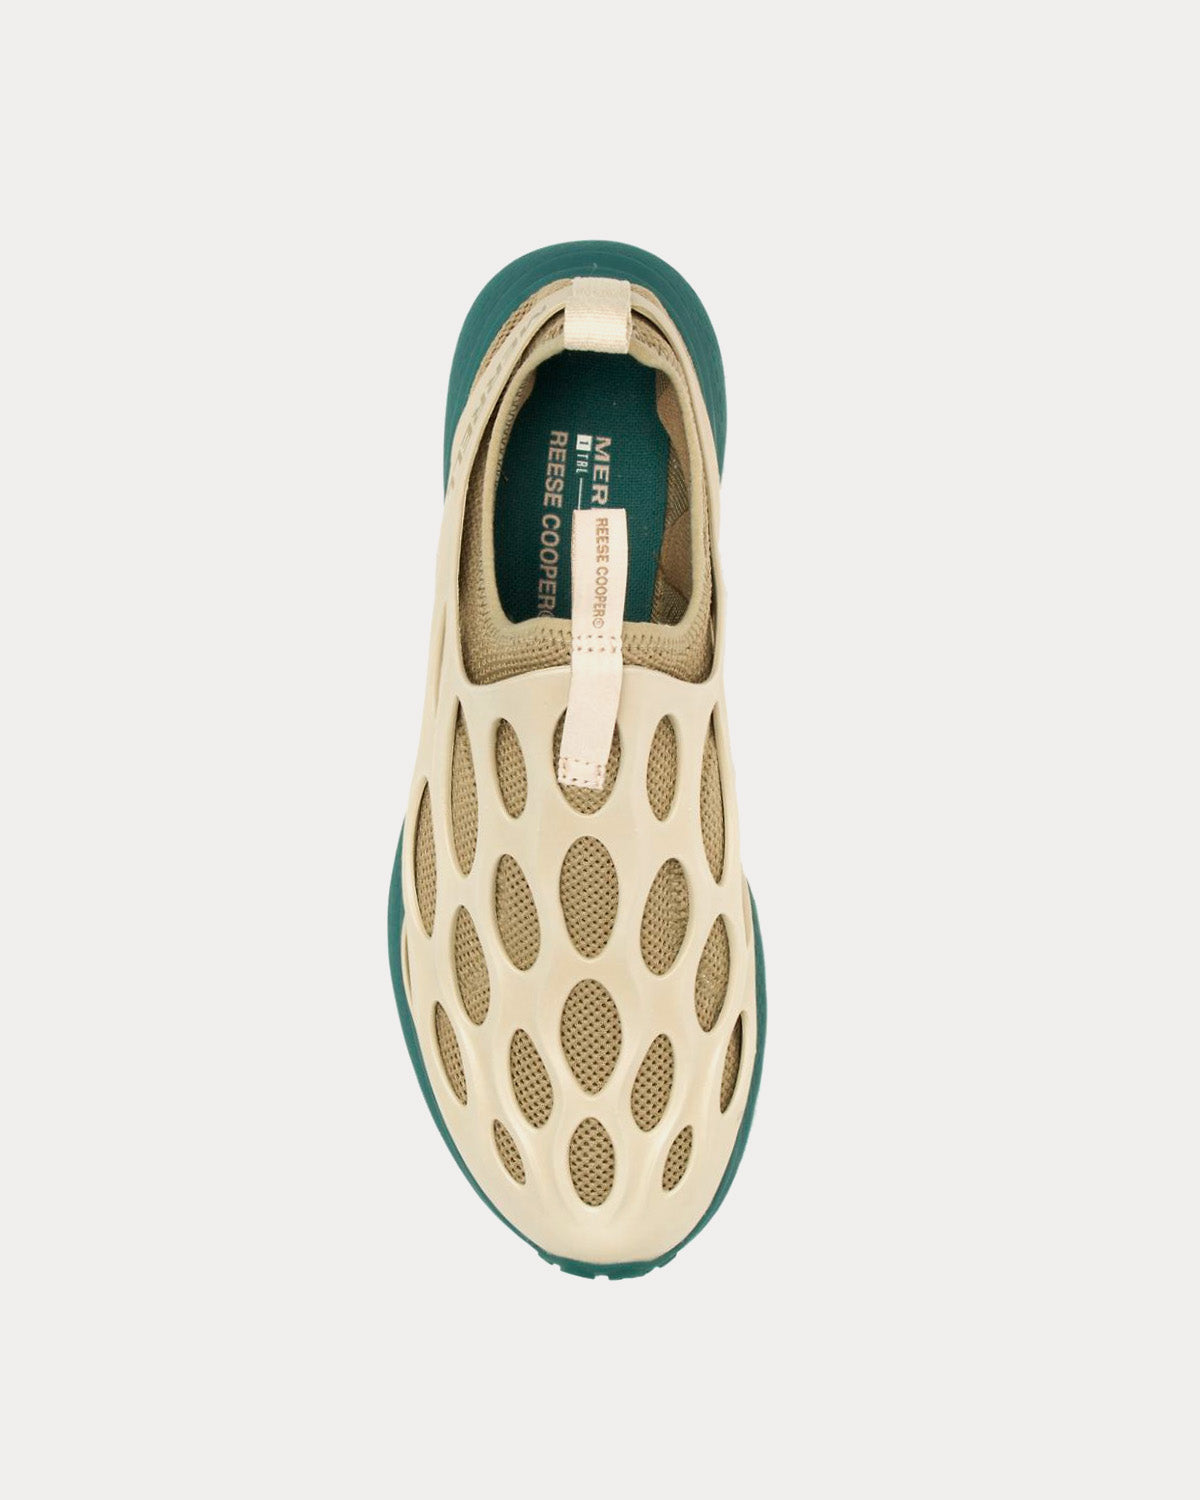 Merrell x Reese Cooper - Hydro Runner Pebble Slip On Sneakers